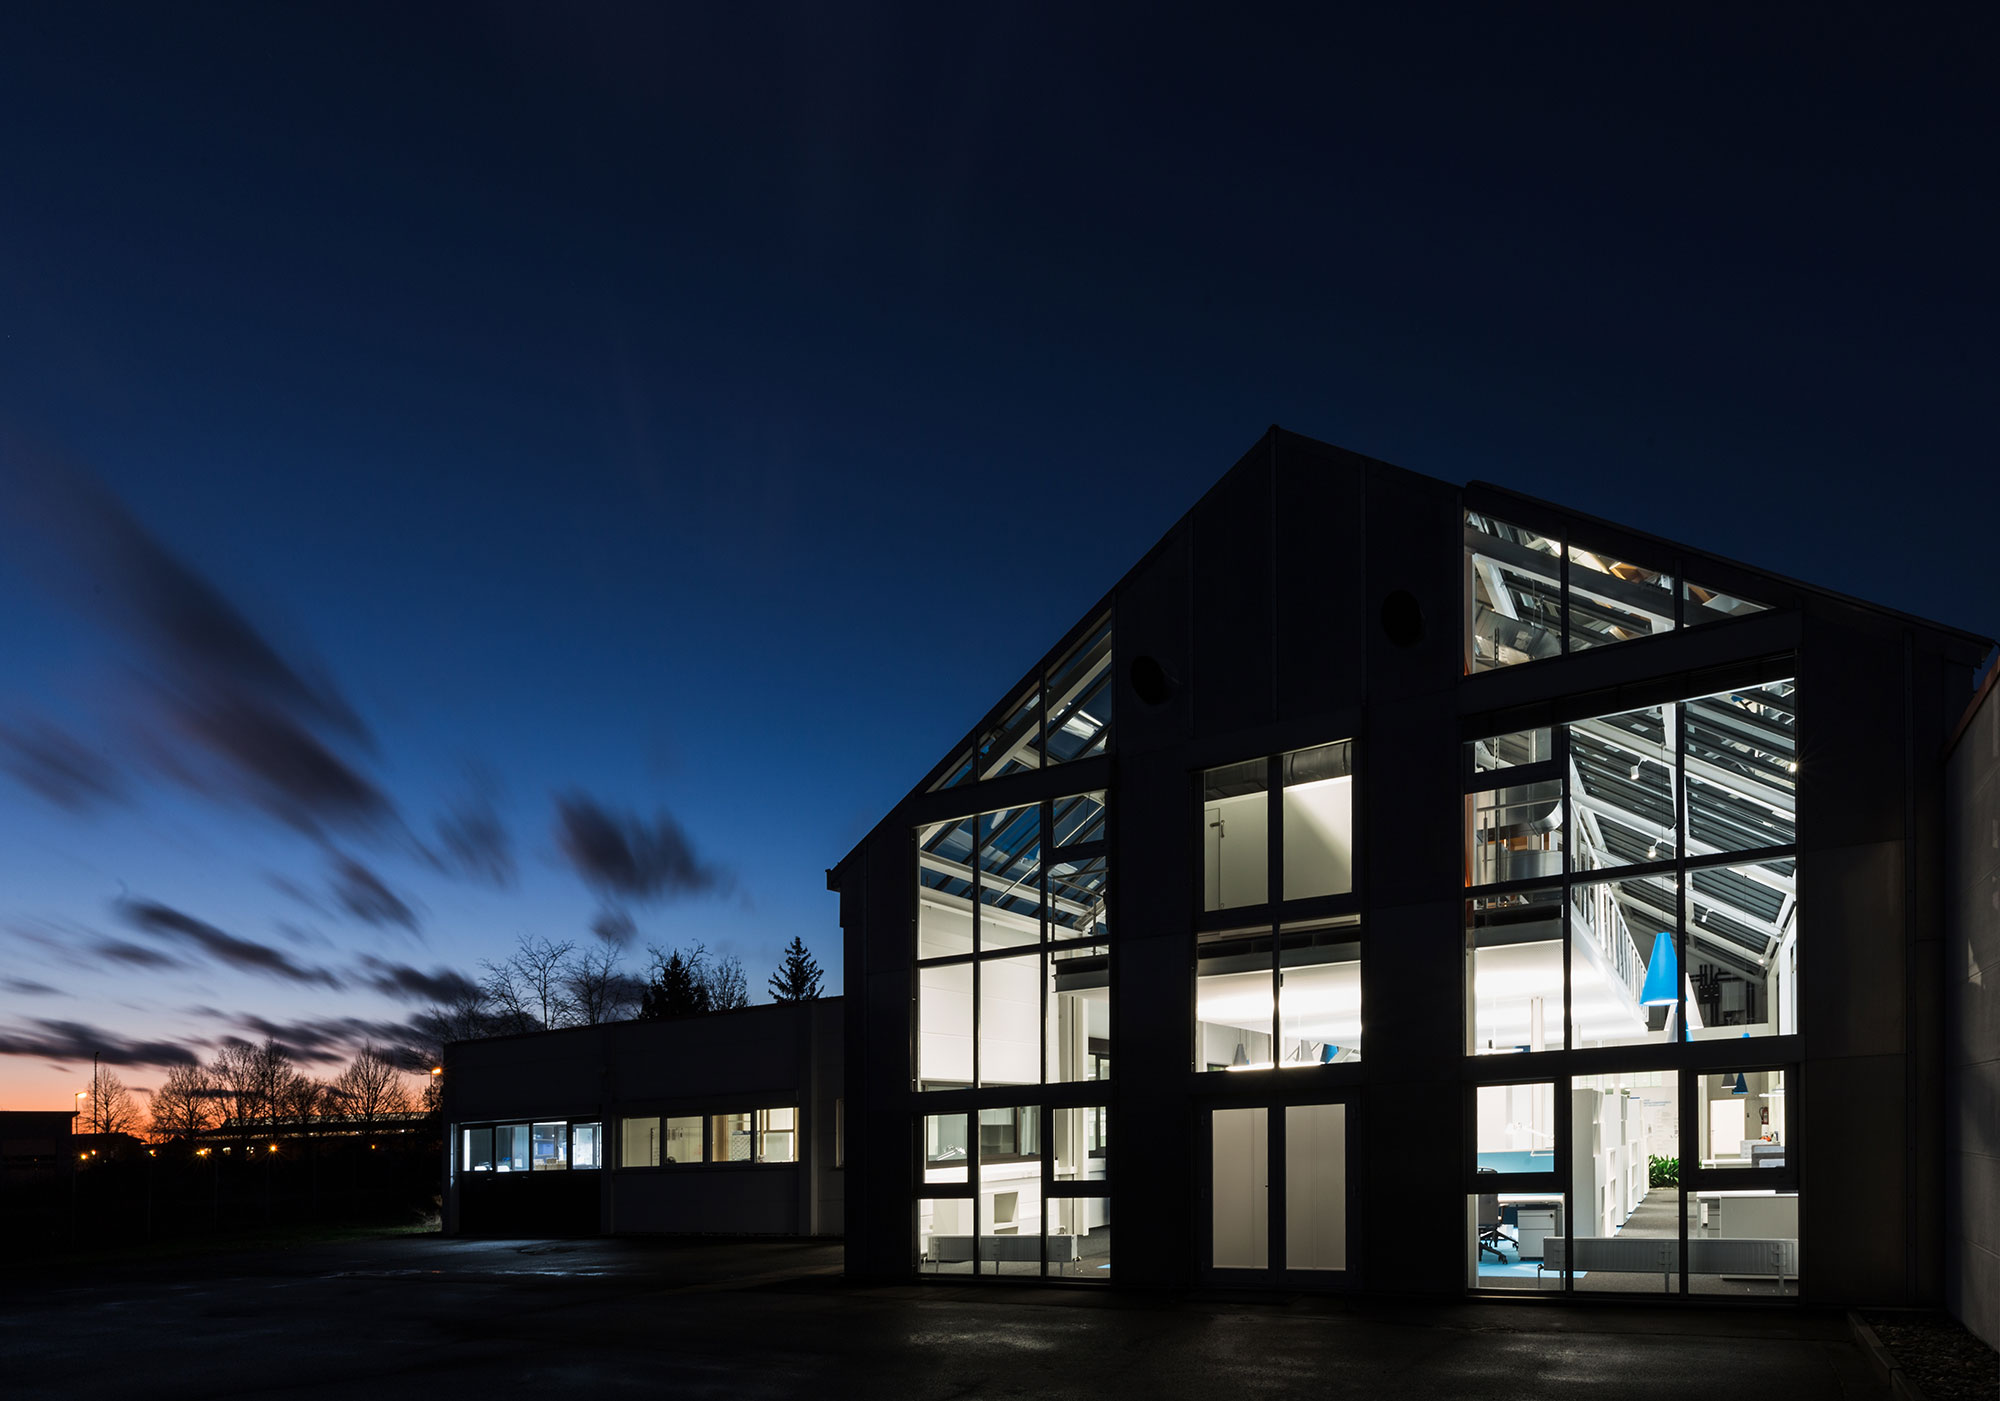 Das moderne BUSSE DESIGN+ENGINEERING Headquarter mit großen Glasfenstern wird von innen beleuchtet und hebt sich vom dunkler werdenden Himmel während der Dämmerung ab. Das Bild zeigt architektonisches Design und natürliche Beleuchtungseffekte.